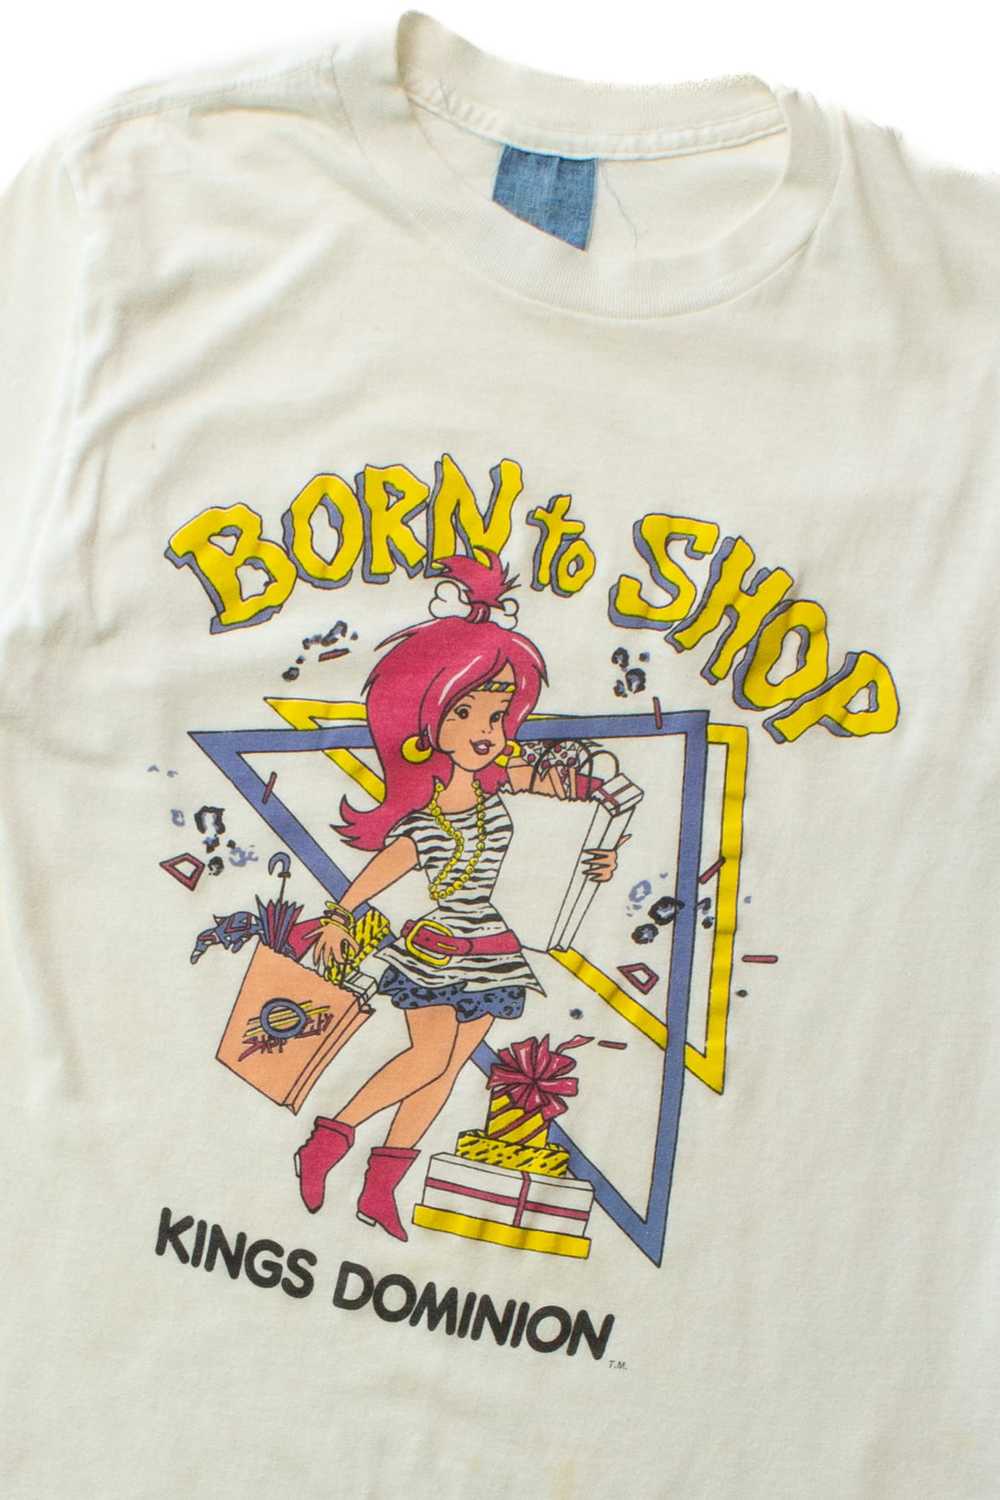 Vintage Born To Shop T-Shirt (1980s) - image 2